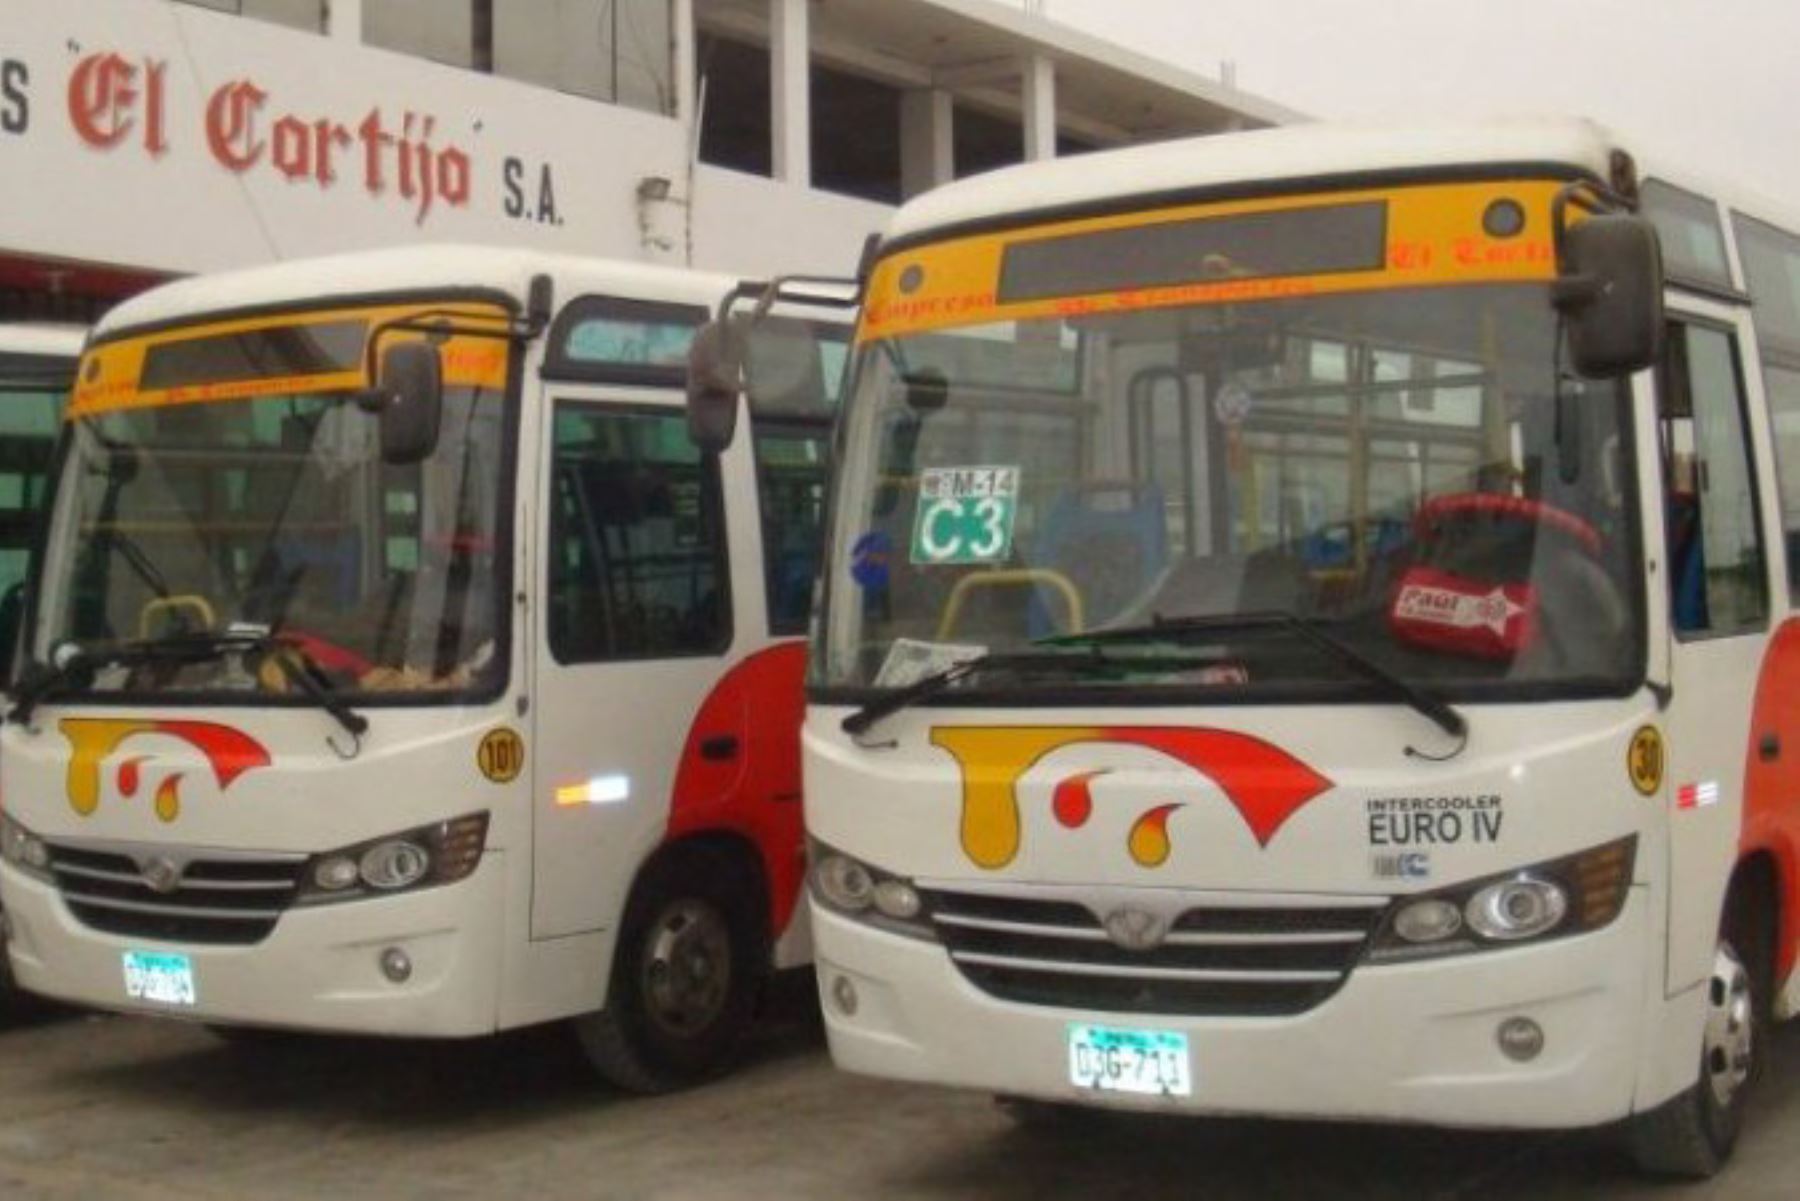 Una unidad de la empresa de transportes El Cortijo fue víctima de asalto en Trujillo. Foto: etecsa.com.pe